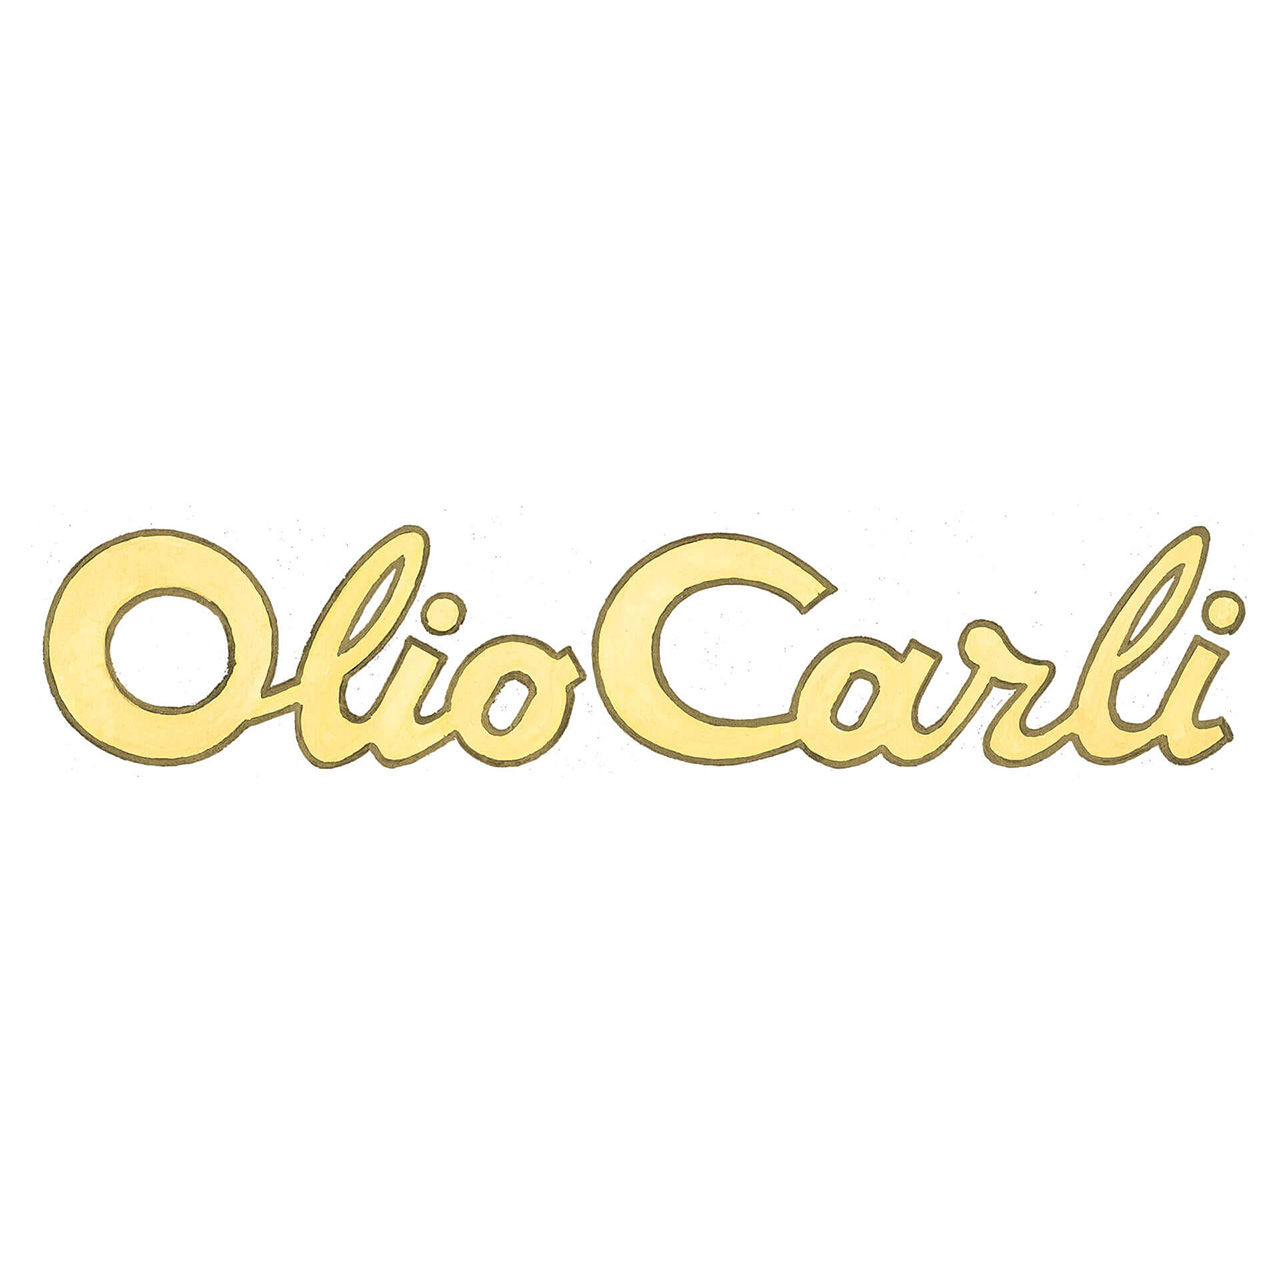 Olio Carli logo 